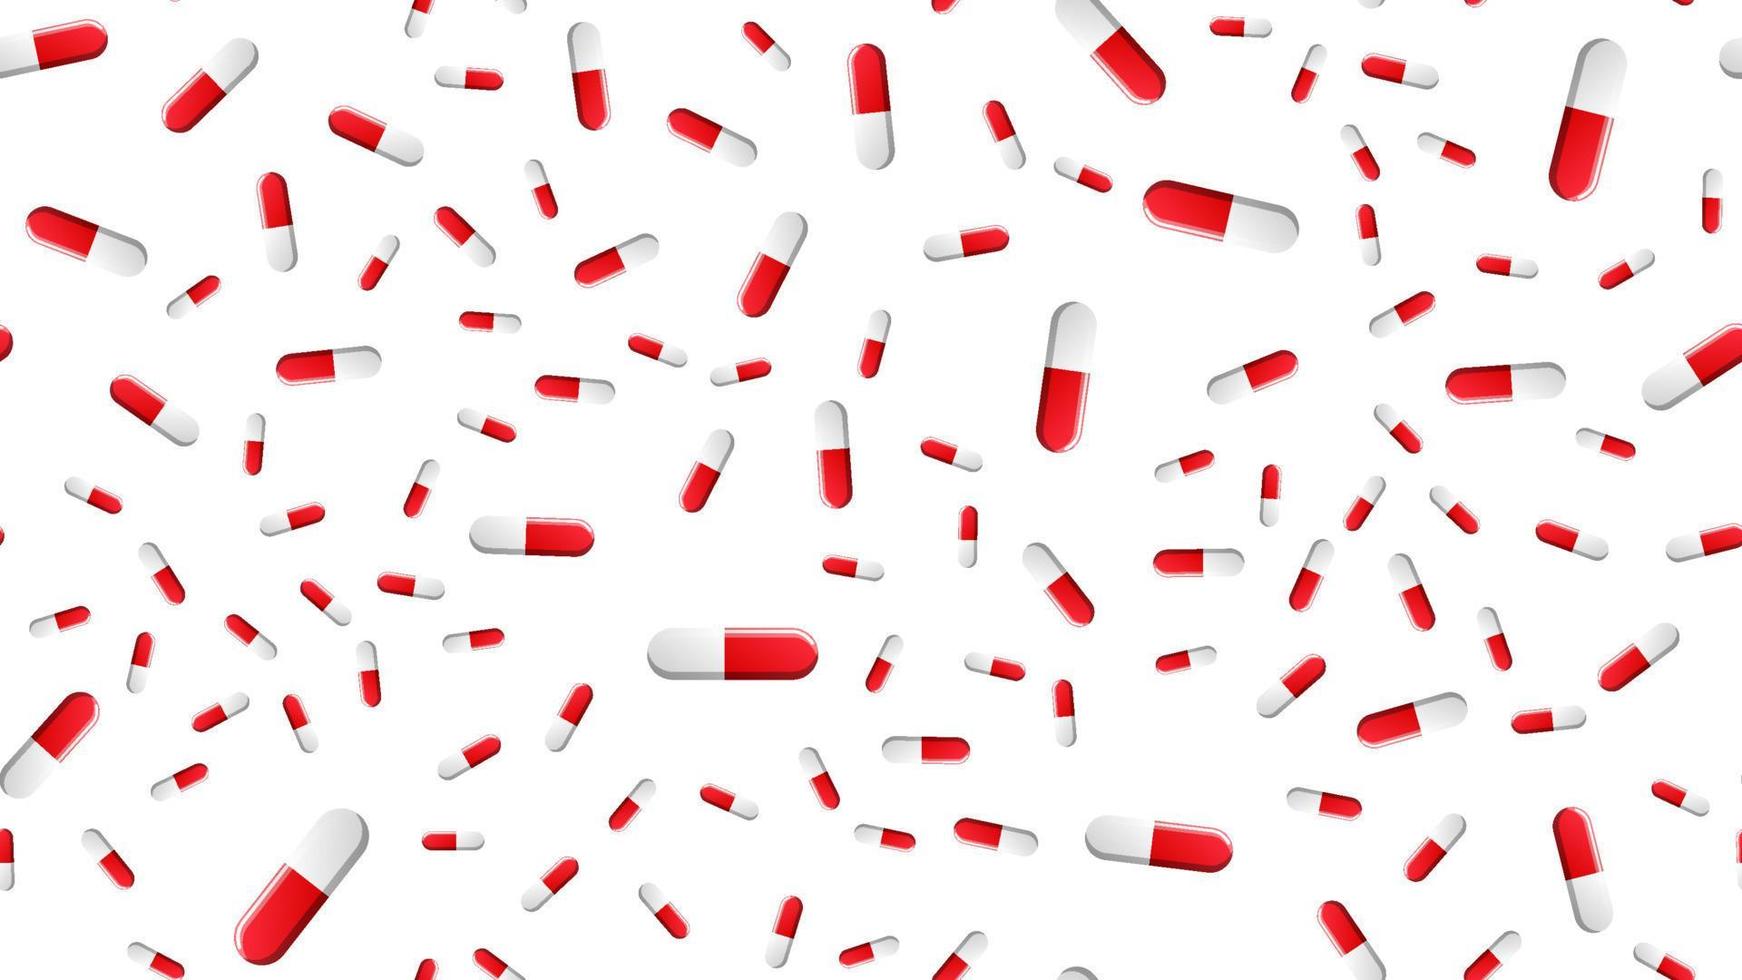 ändlös sömlös mönster av medicinsk vetenskaplig medicinsk föremål, farmakologisk tabletter och mediciner, piller kapslar på en vit bakgrund. vektor illustration